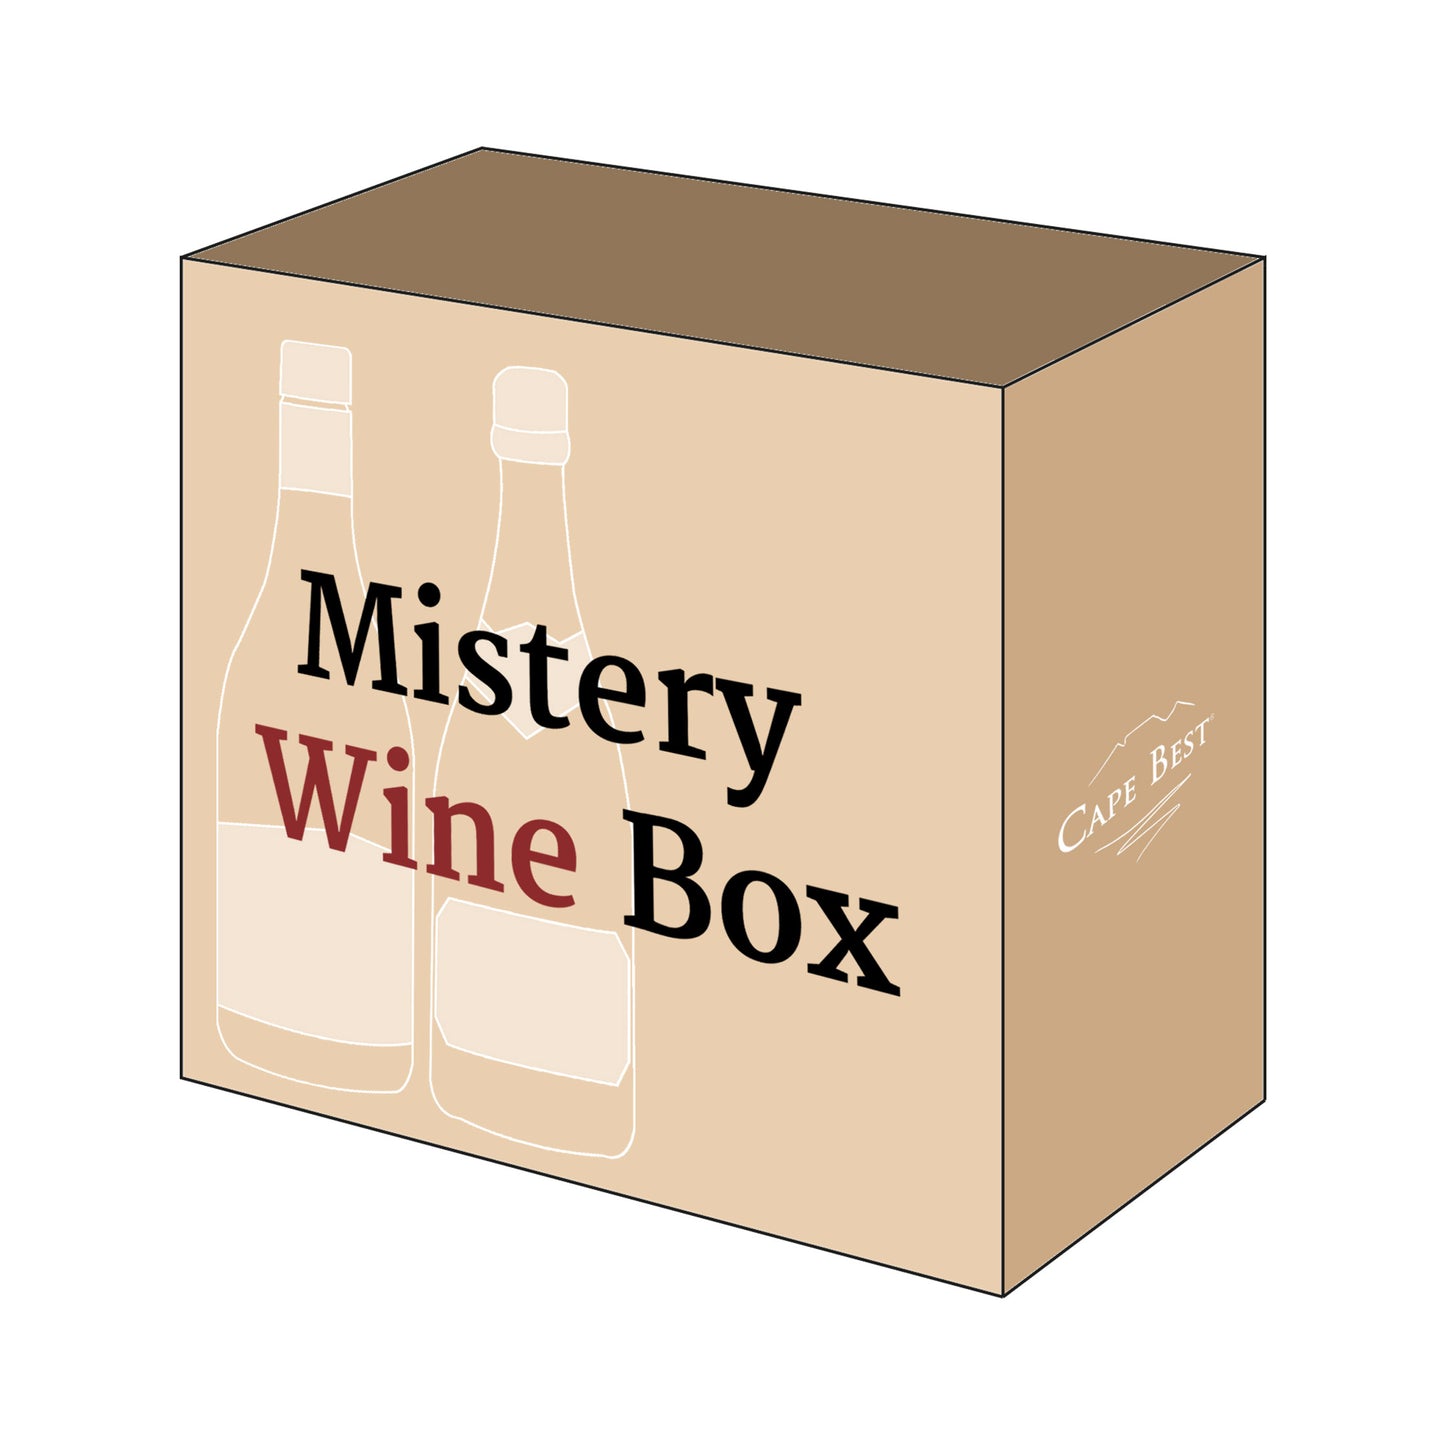 Mistery Box con vini sudafricani scegli da noi. Vini rossi, bianchi o bollicine